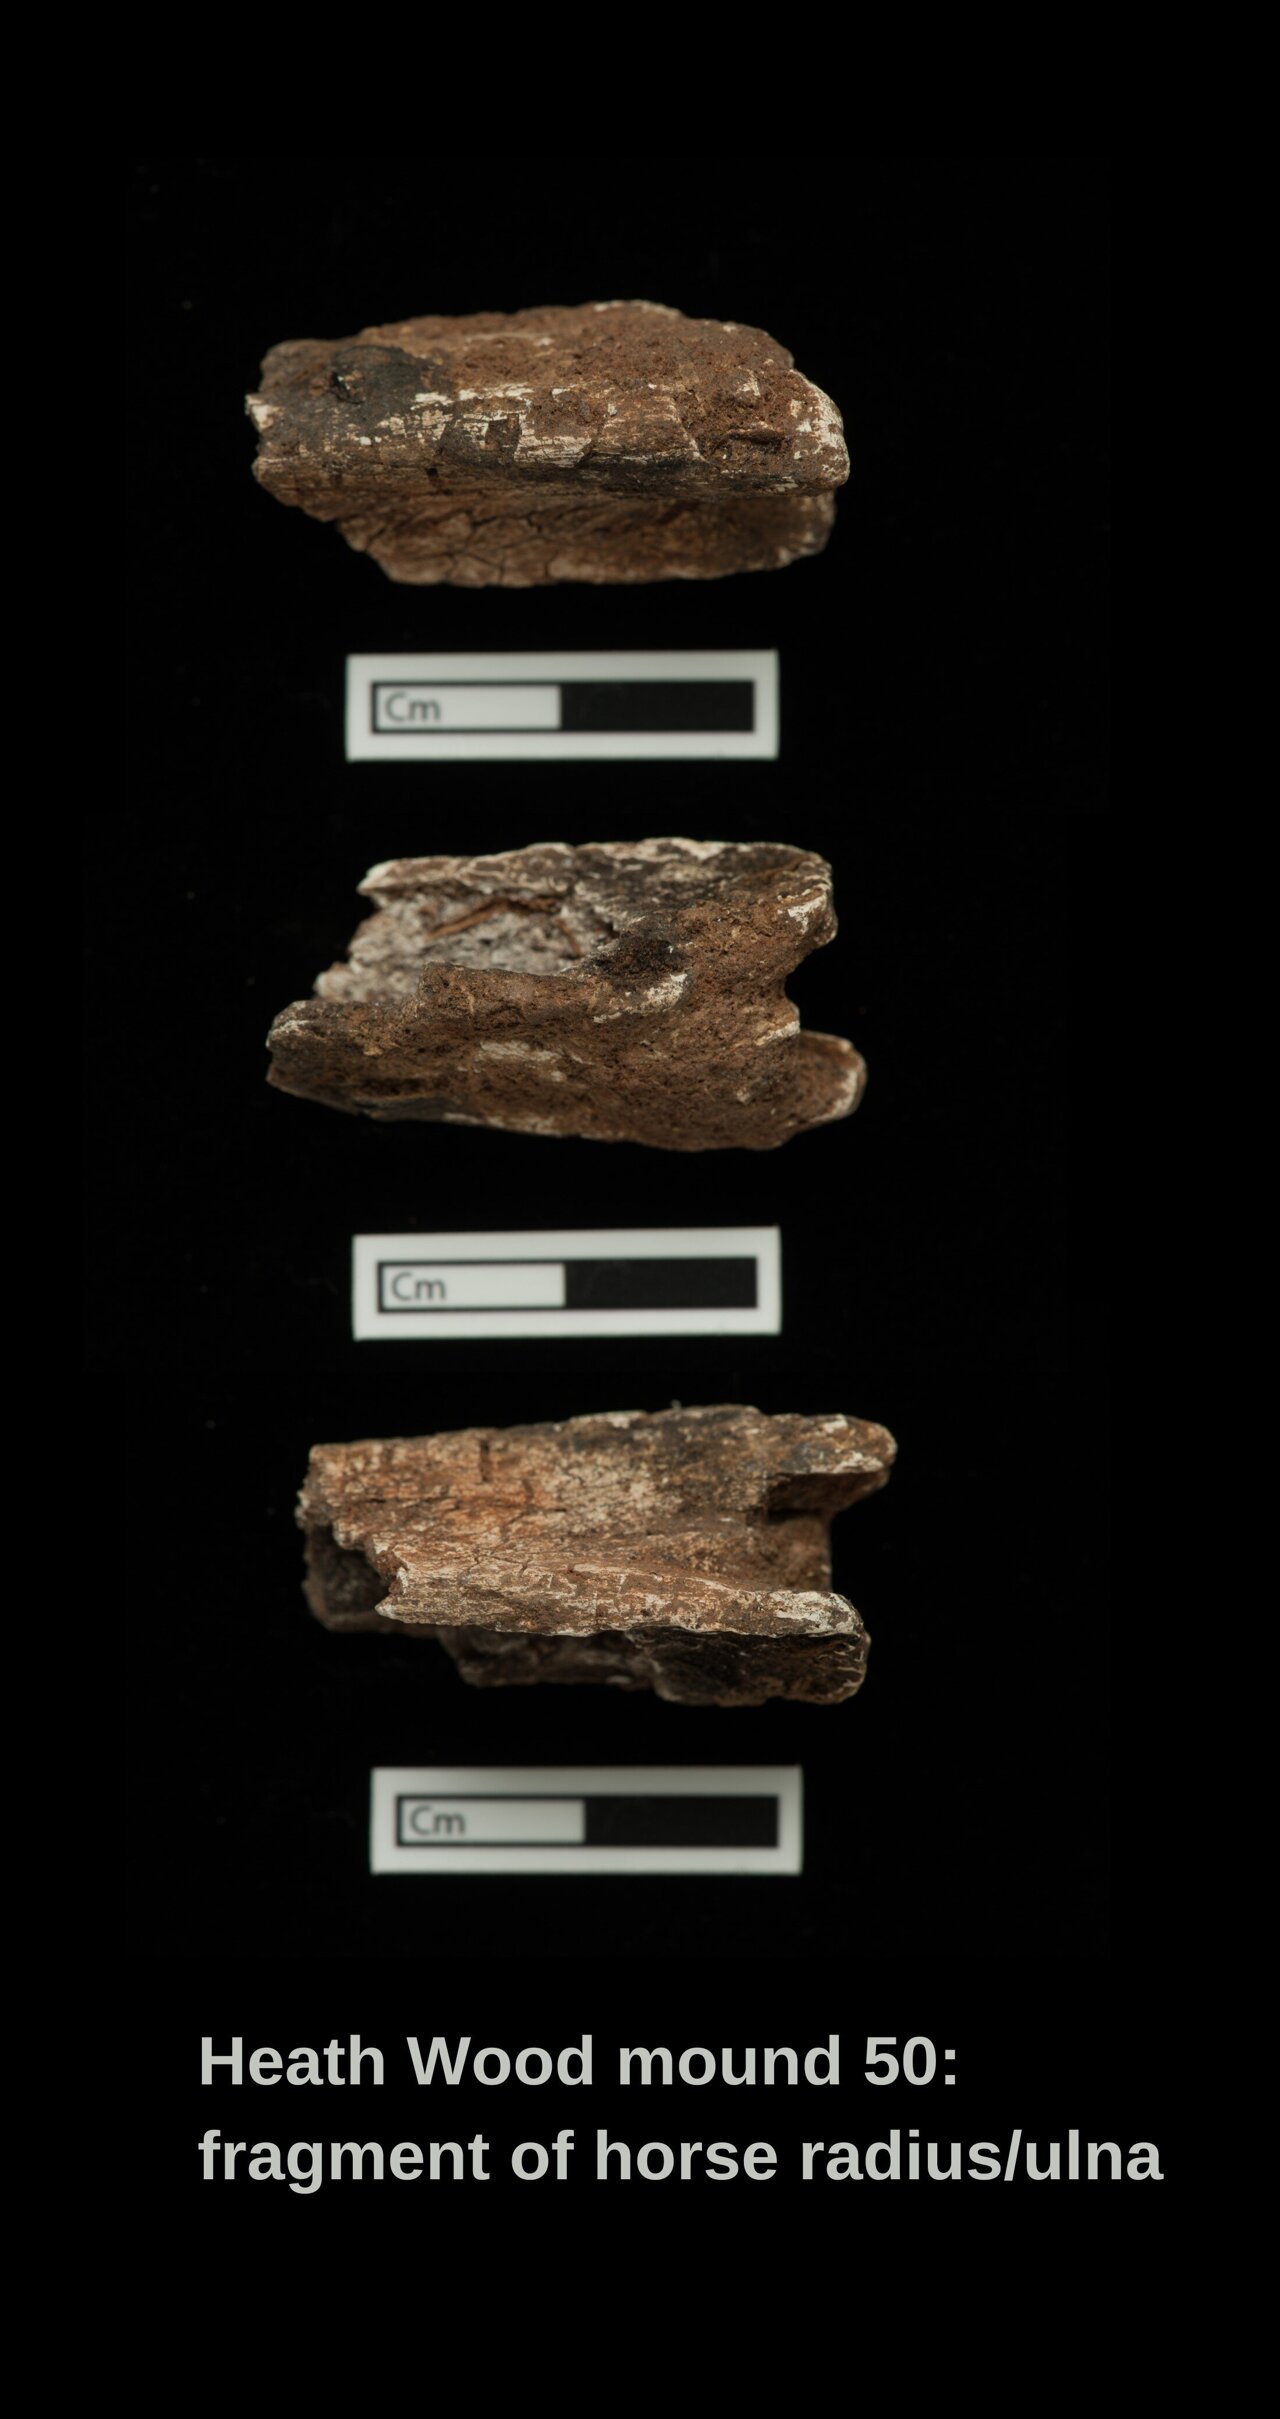 Fragment eines Speichen/Ulna-Probes eines eingeäscherten Pferdes aus dem Grabhügel 50 in Heath Wood.